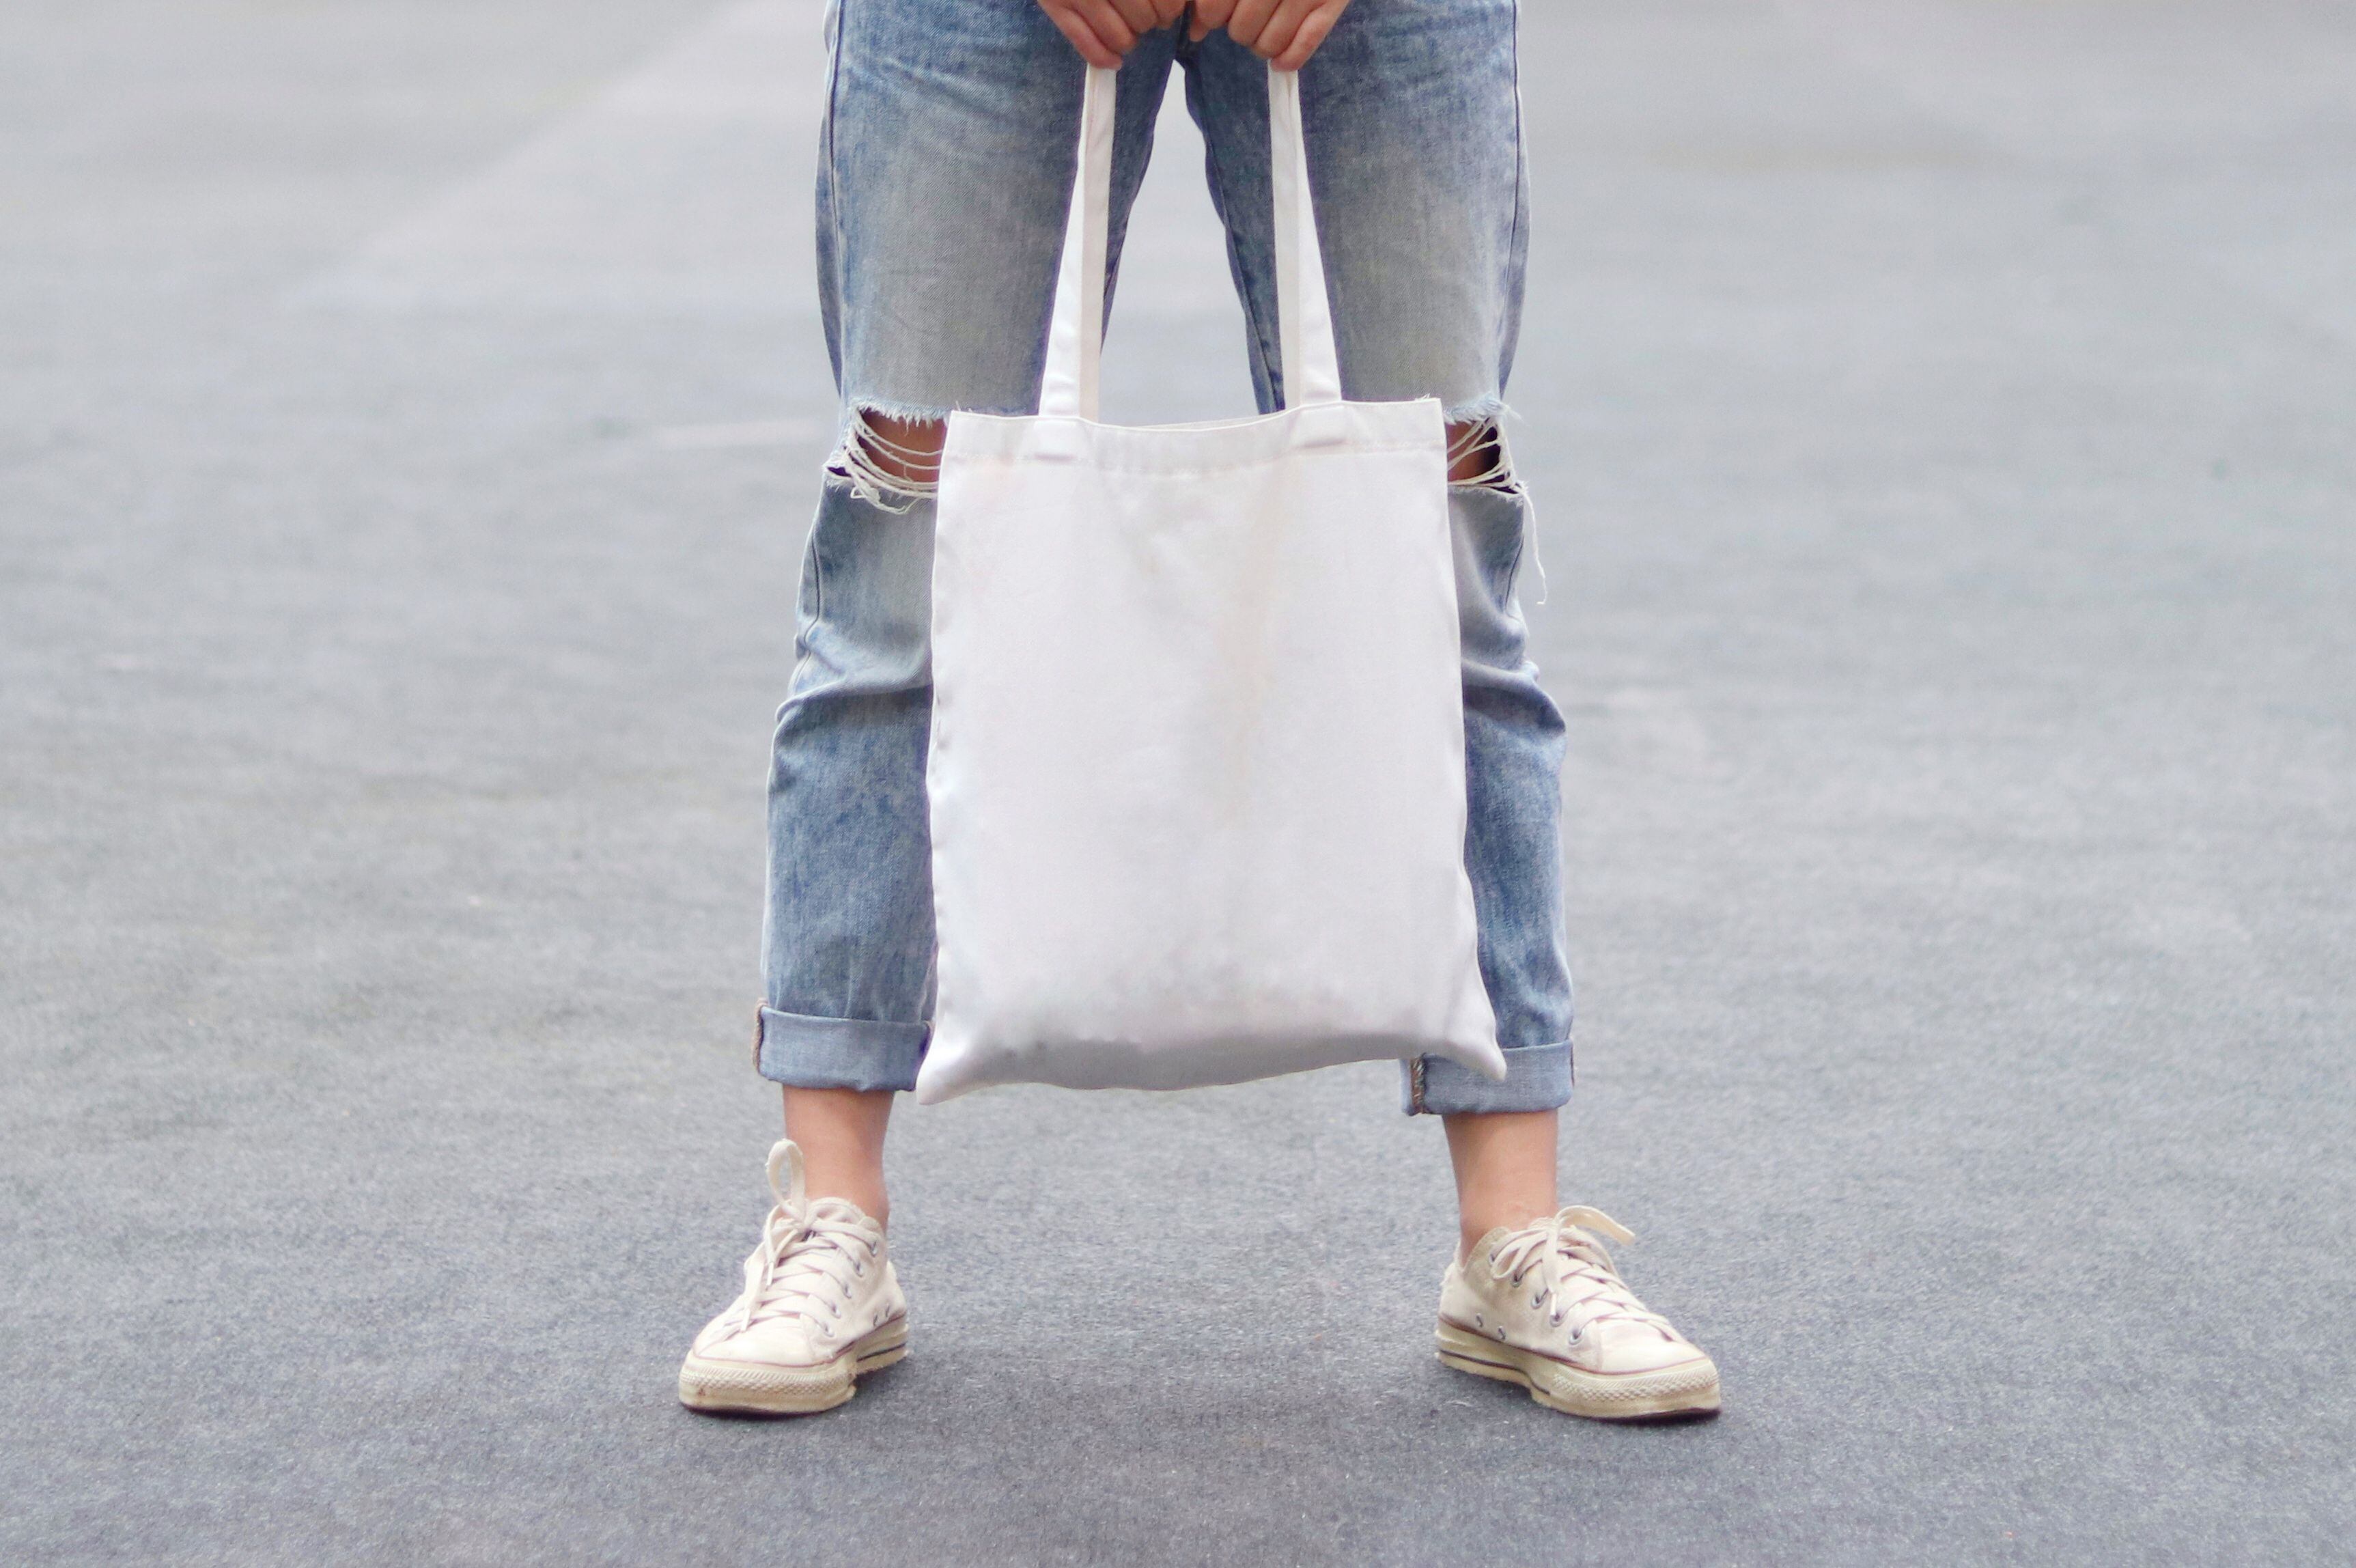 Las bolsas reutilizables son una buena opción para poder llevar las compras que realices durante tu viaje. (Foto: Shutterstock)